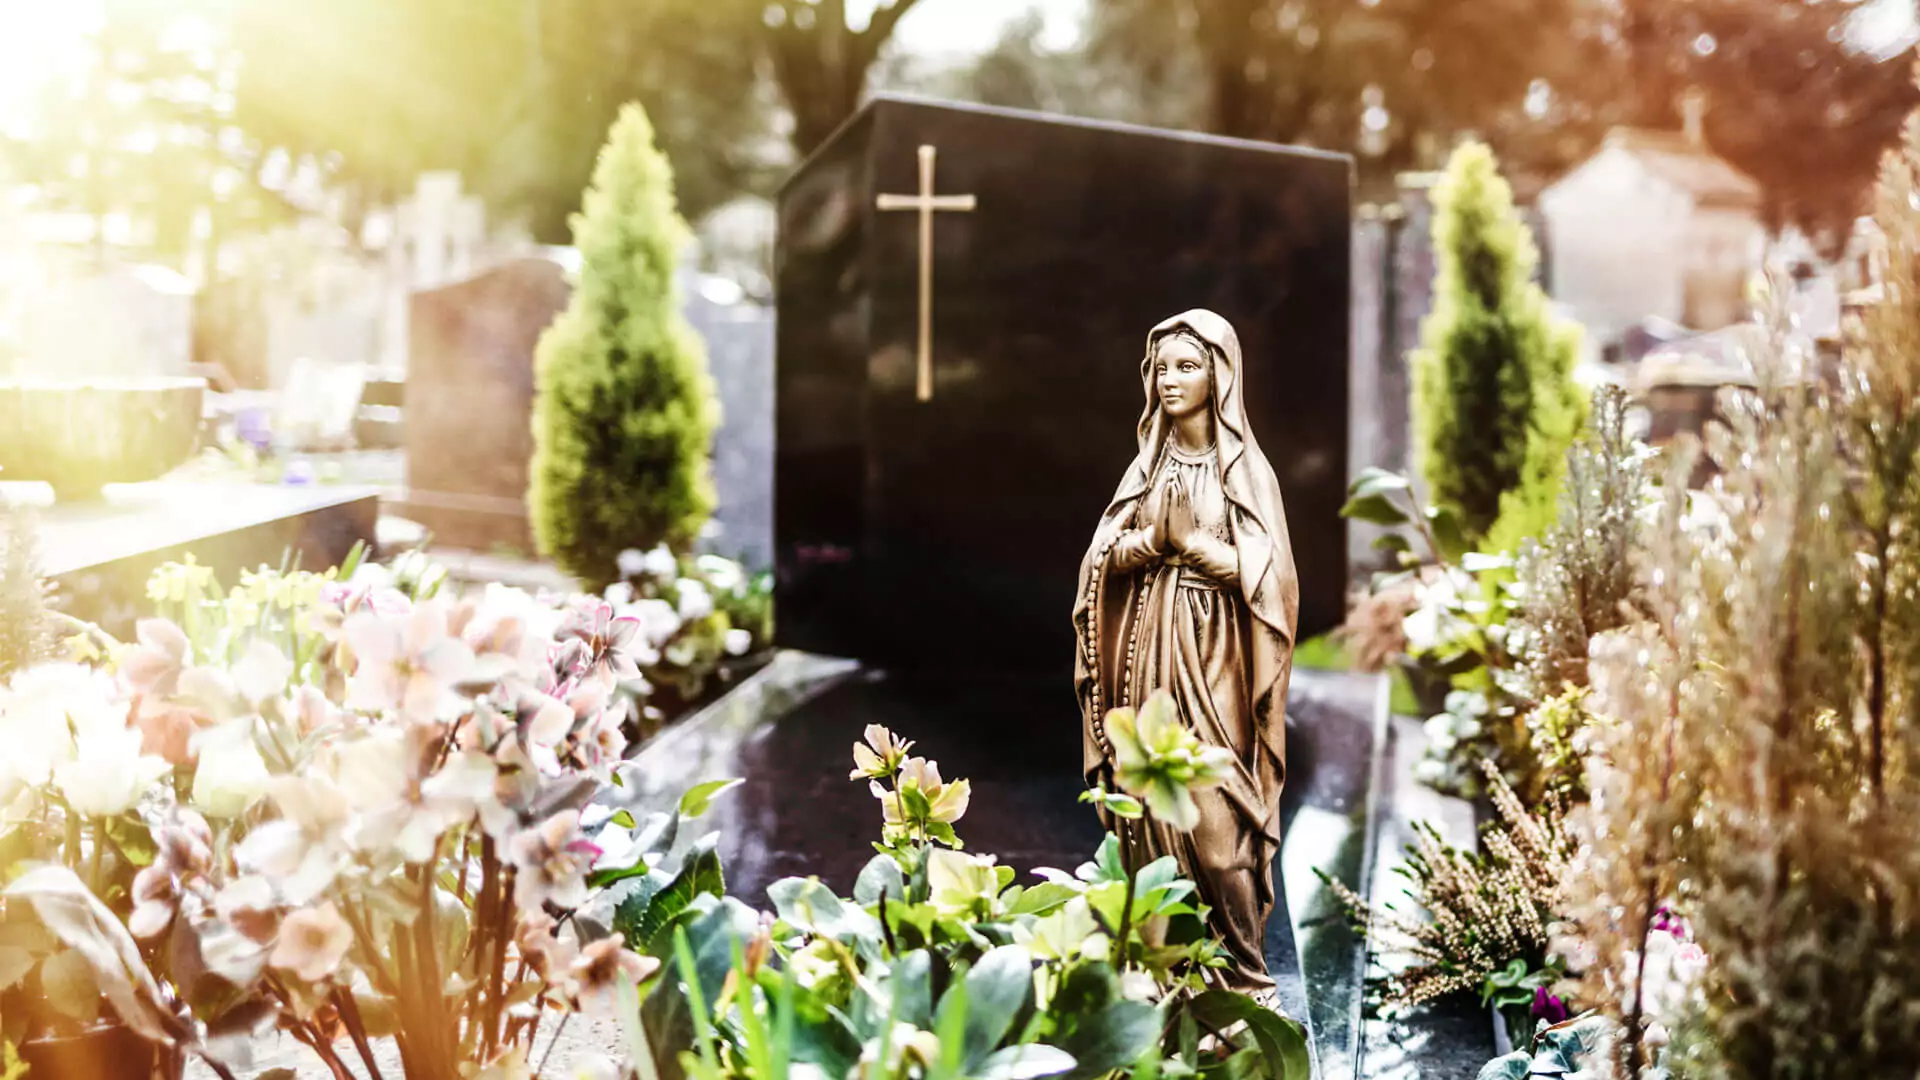 Grabstein mit goldenem Kreuz und davor steht eine Figur der Jungfrau Maria mit Blumenschmuck rund um das Grab auf einem Friedhof.